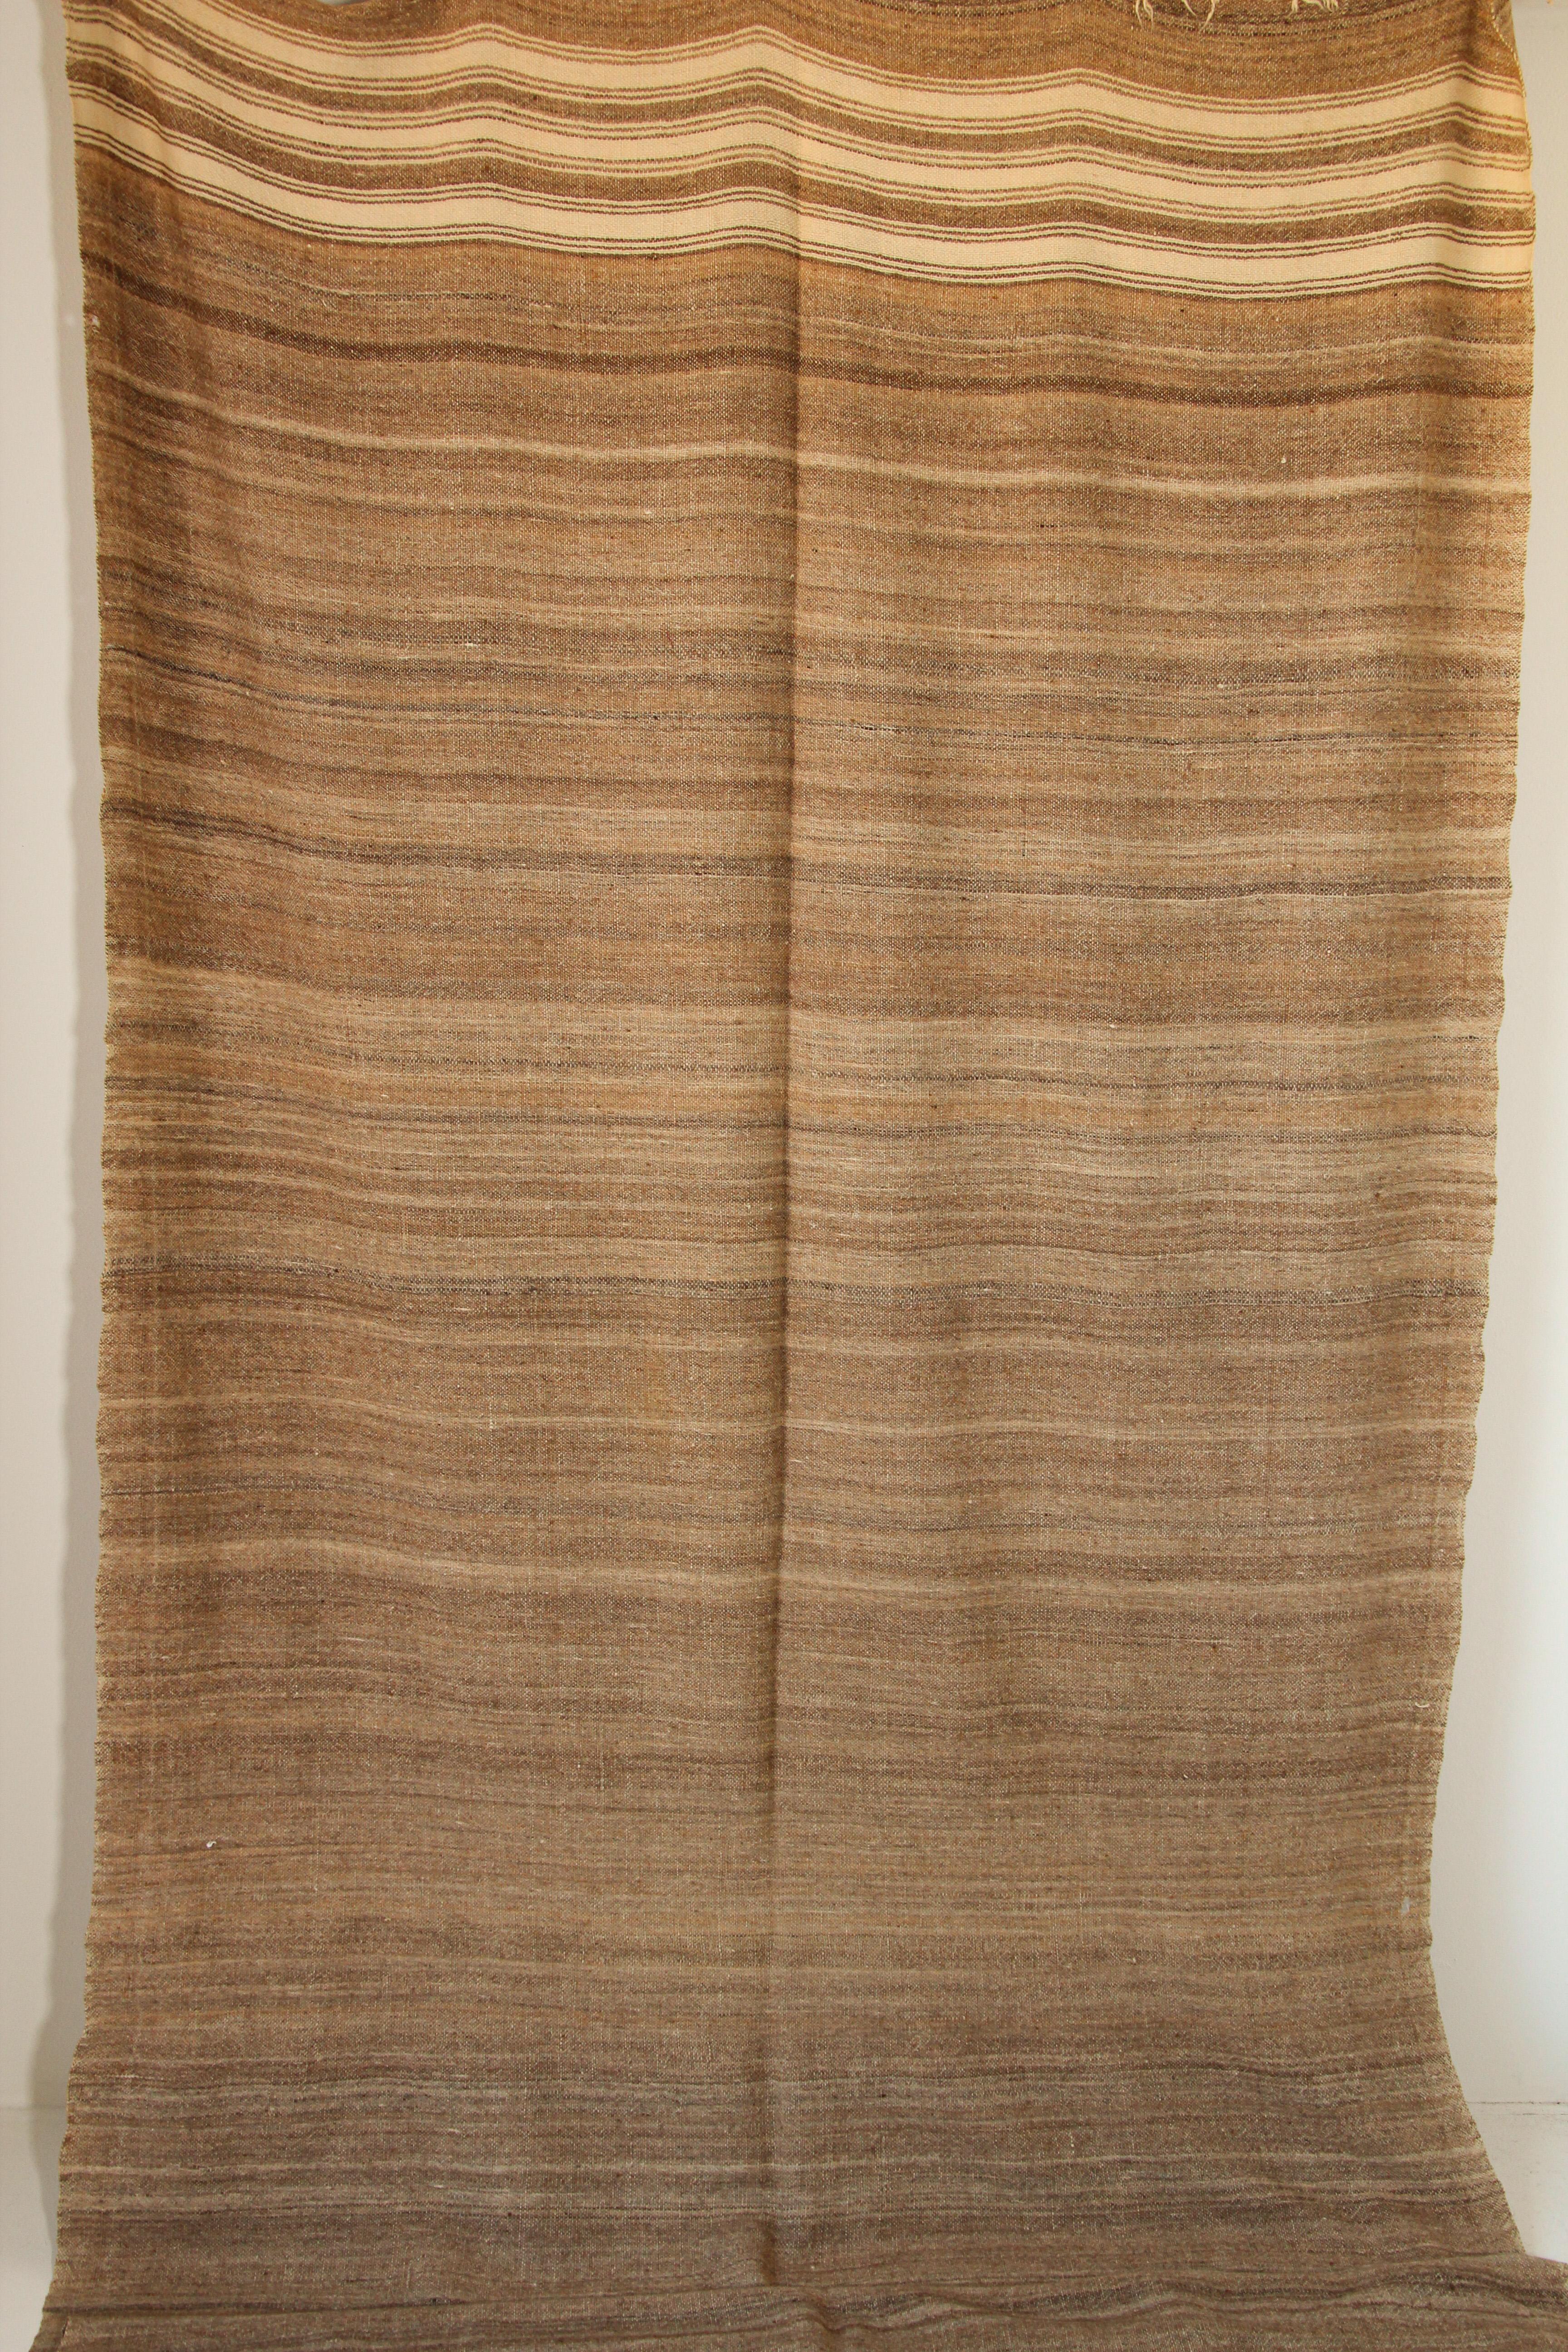 1960er Jahre Vintage marokkanischen Teppich Flachgewebe Stammes-braun Kilim oder blanket.Large Größe Decke Vintage marokkanischen Teppich, handgewebt von Berber Frauen in Marokko für ihre eigenen use.This Teppich wurde mit Flachgewebe-Technik mit